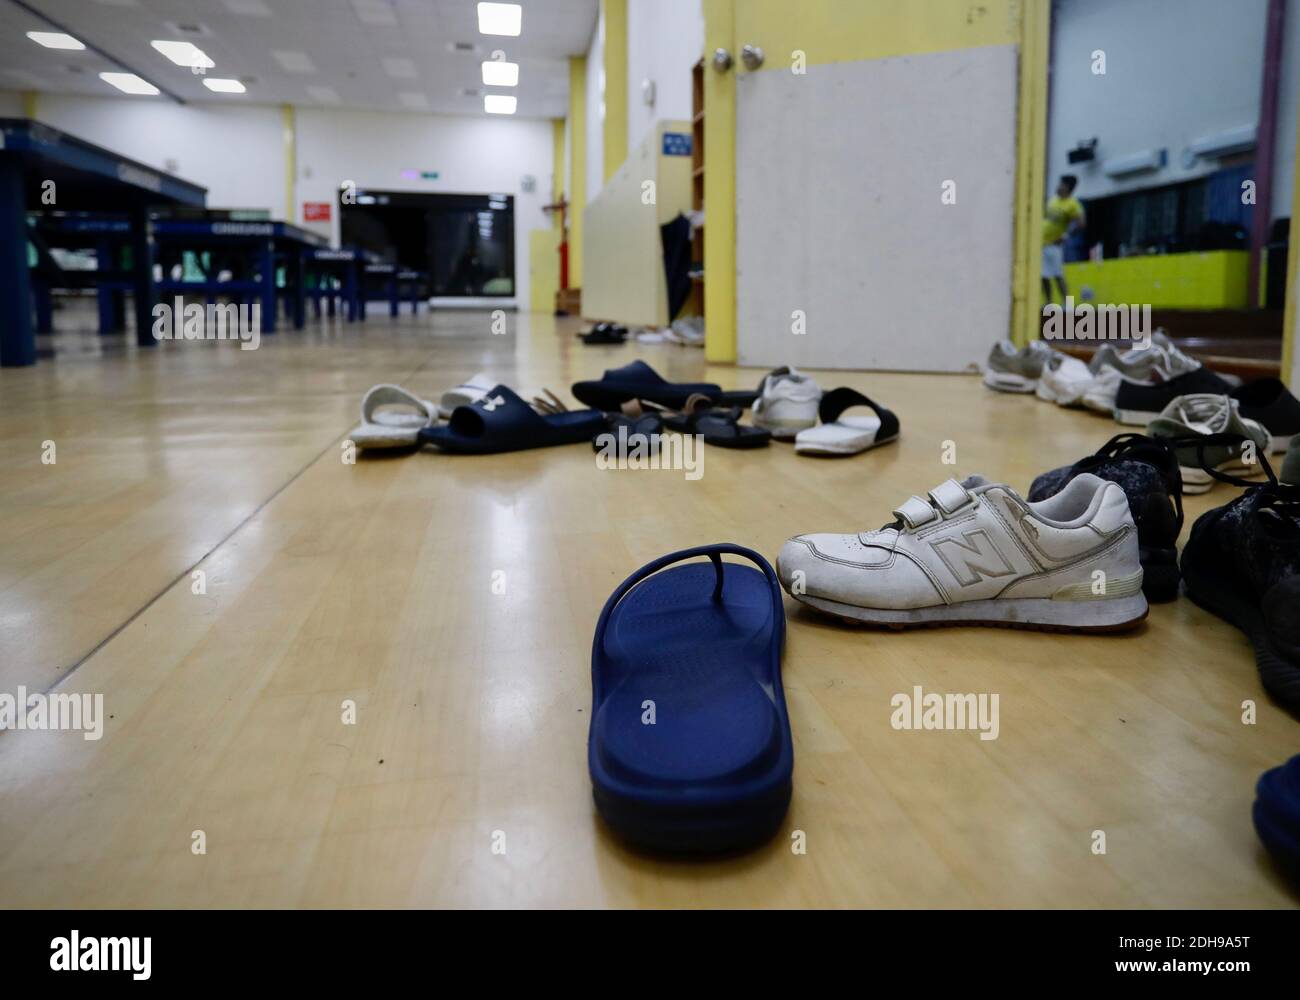 Taipei, Taipei, Taïwan. 10 décembre 2020. Les chaussures sont laissées derrière elles lorsque les étudiants sortent d'une salle de conférence, selon un conférencier d'une université. Un séisme de magnitude 6.7 frappe le nord-est de Taïwan dans la soirée du 12 décembre pendant environ 15 secondes, les gens se précipitant hors des zones intérieures. Crédit : Daniel CEng Shou-Yi/ZUMA Wire/Alay Live News Banque D'Images